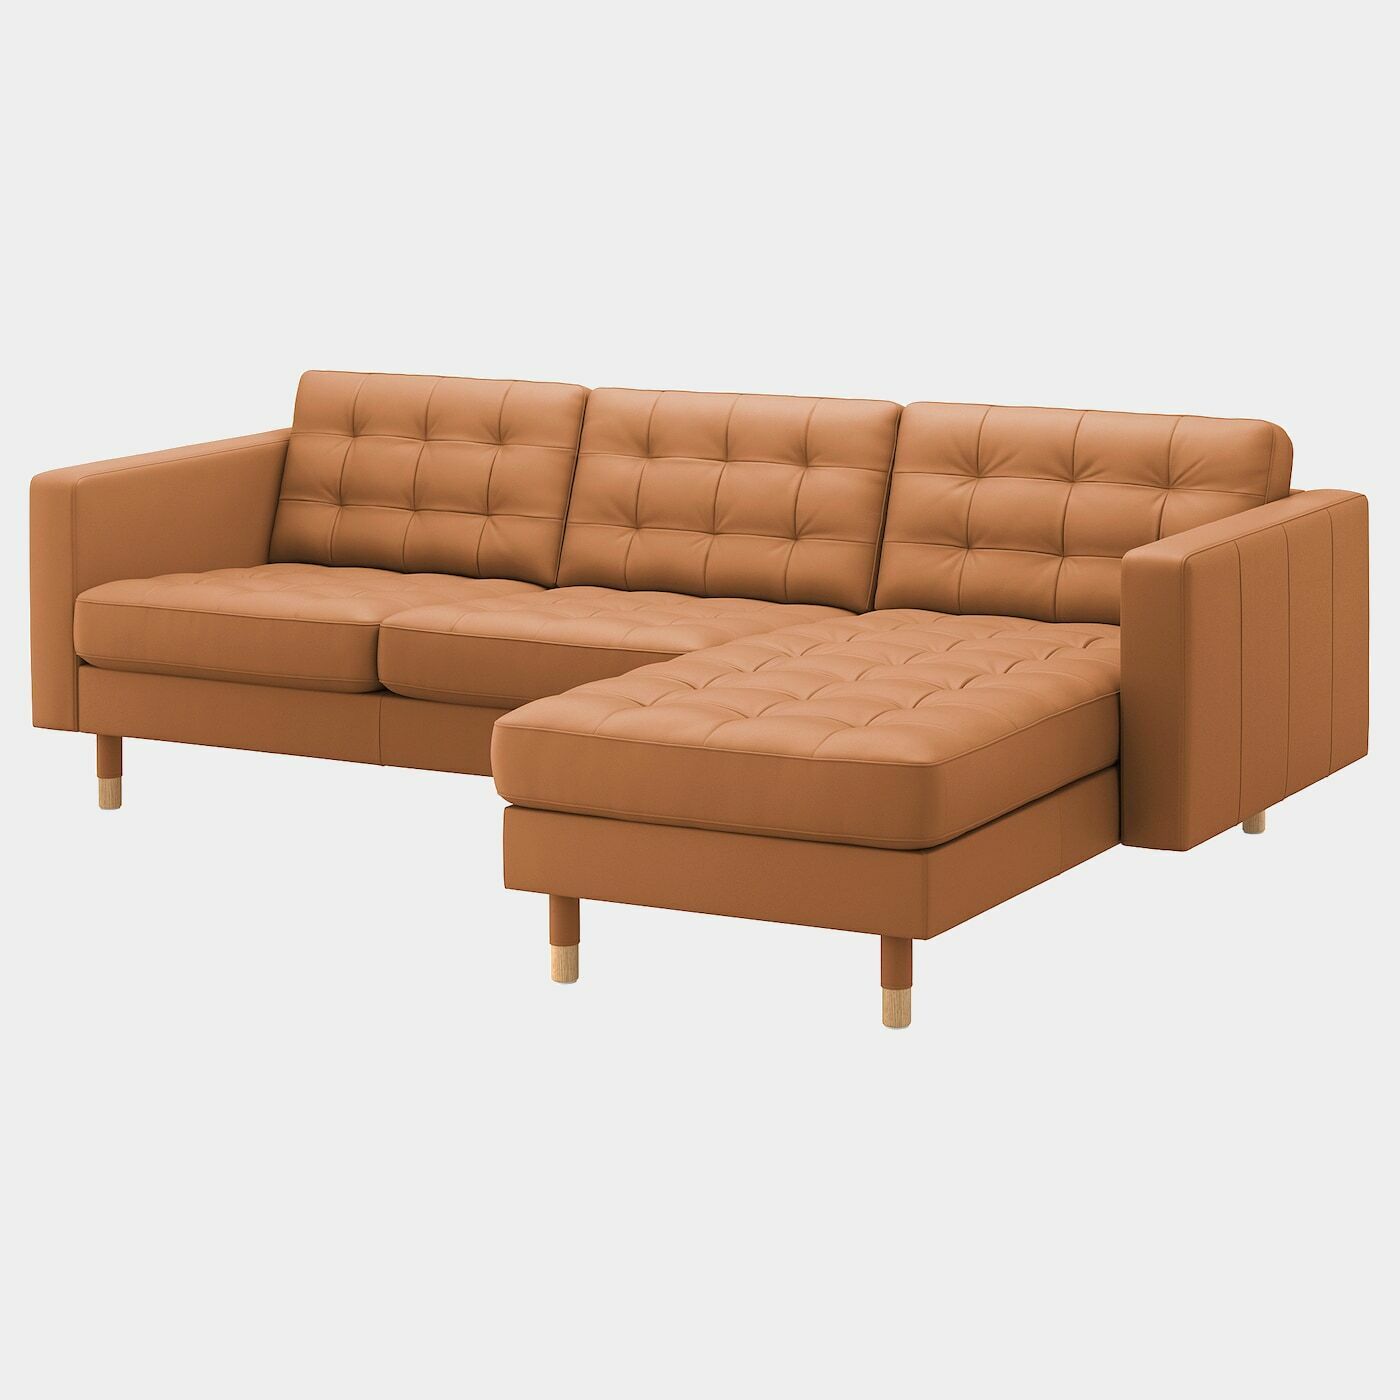 LANDSKRONA 3er-Sofa  - Sofas & Polstergruppen - Möbel Ideen für dein Zuhause von Home Trends. Möbel Trends von Social Media Influencer für dein Skandi Zuhause.